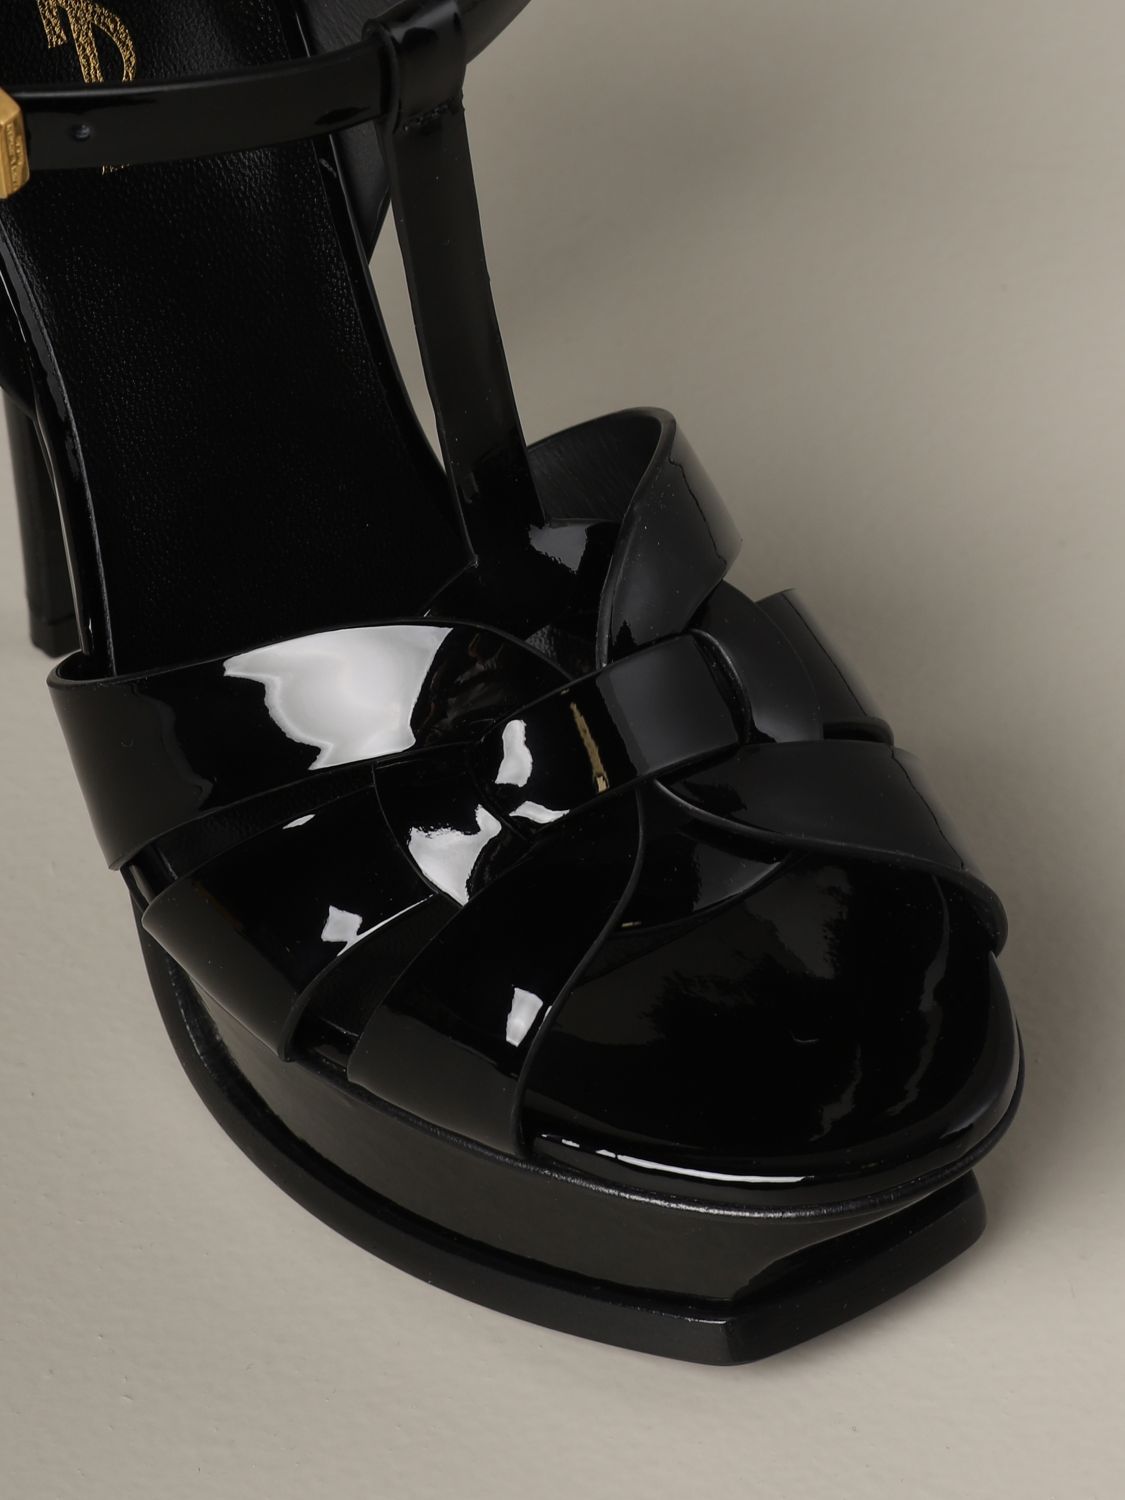 SAINT LAURENT: Tribute sandal in patent leather - Black | Saint Laurent